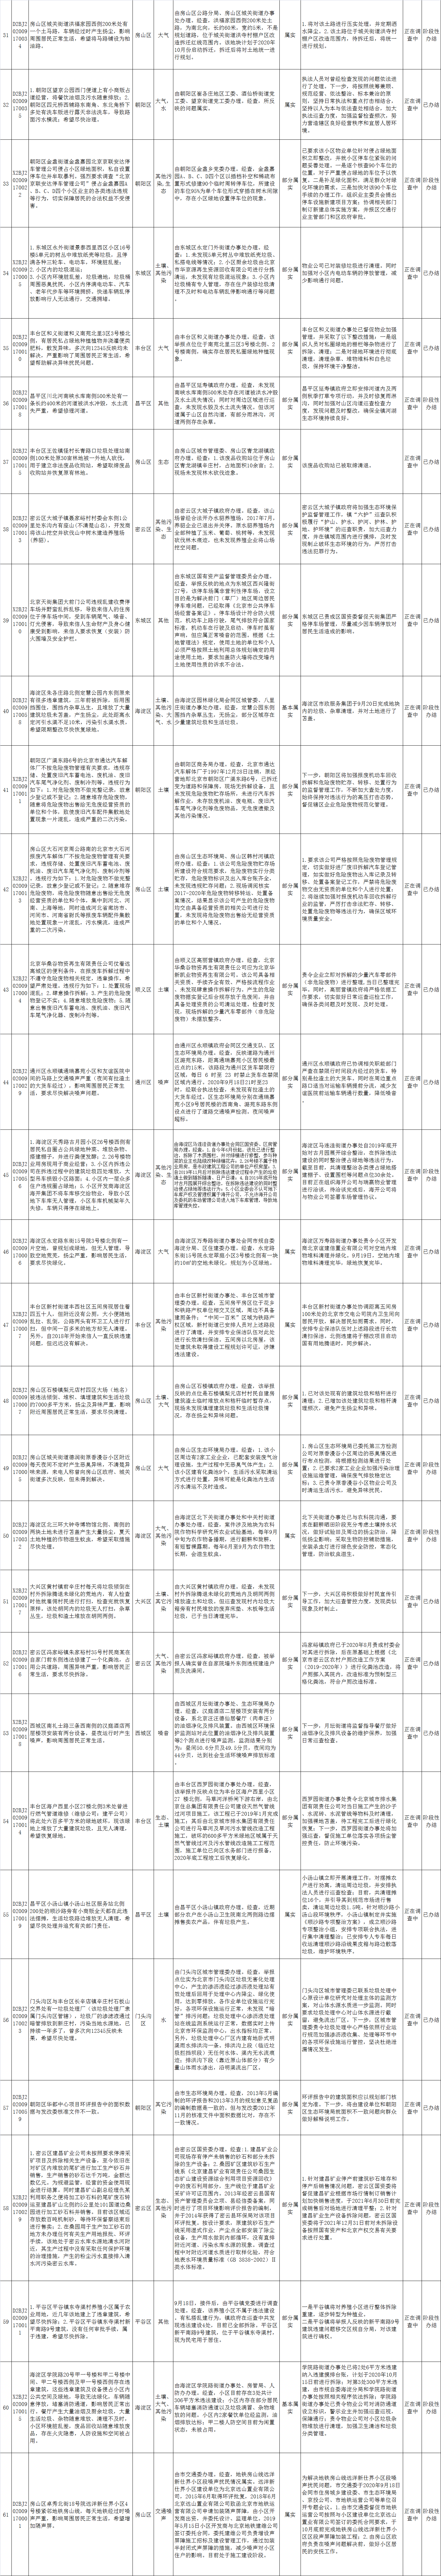 北京市群众信访举报转办和边督边改公开情况一览表(第十八批)